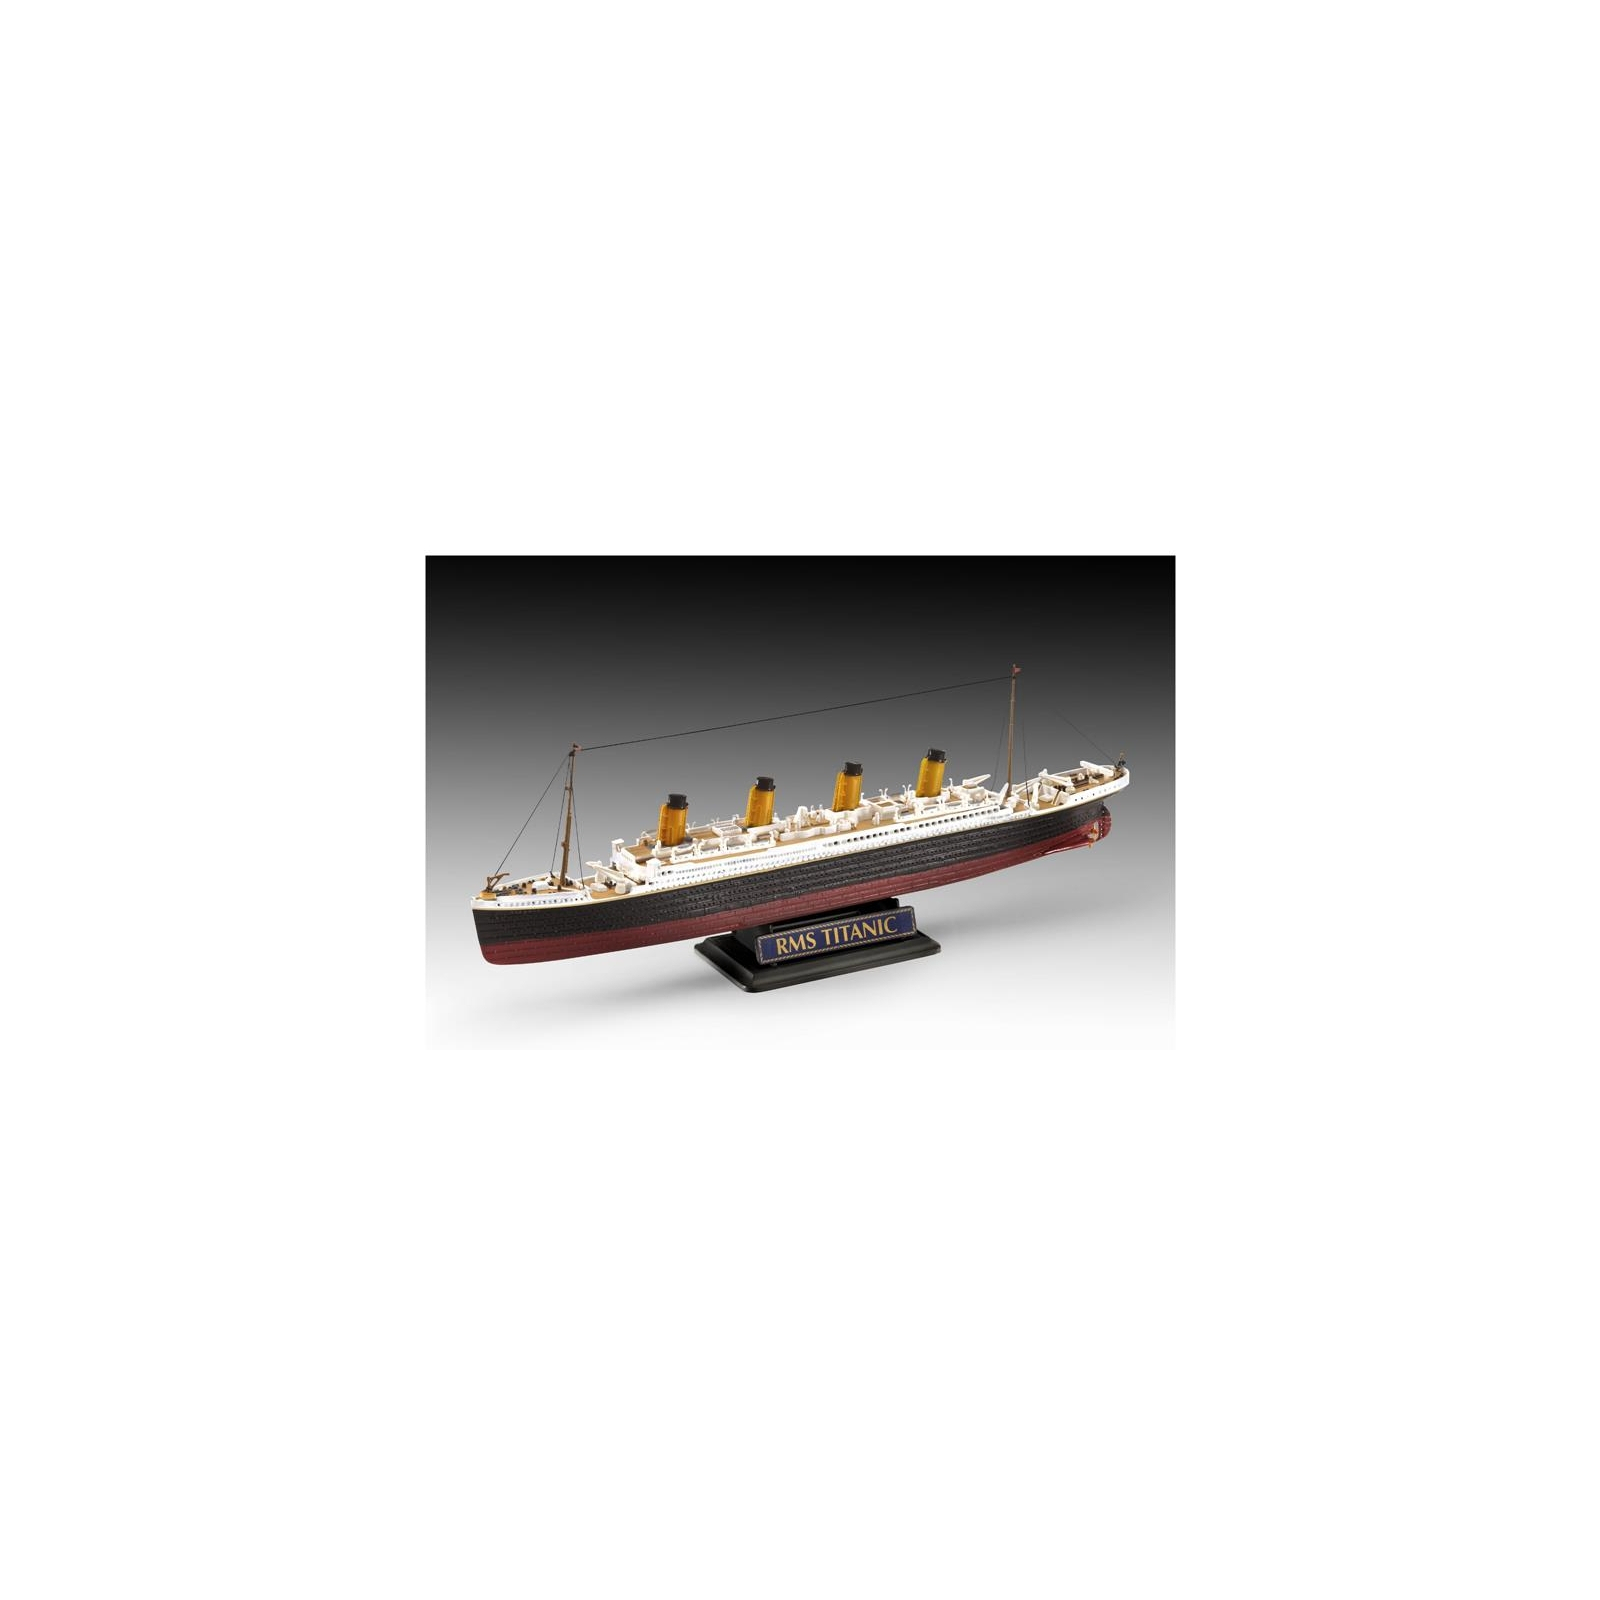 Сборная модель Revell Корабль Титаник подарочный набор уровень 4 1:700 и 1:1200 уровень 4 1:700 и 1:1200 (RVL-05727) изображение 6